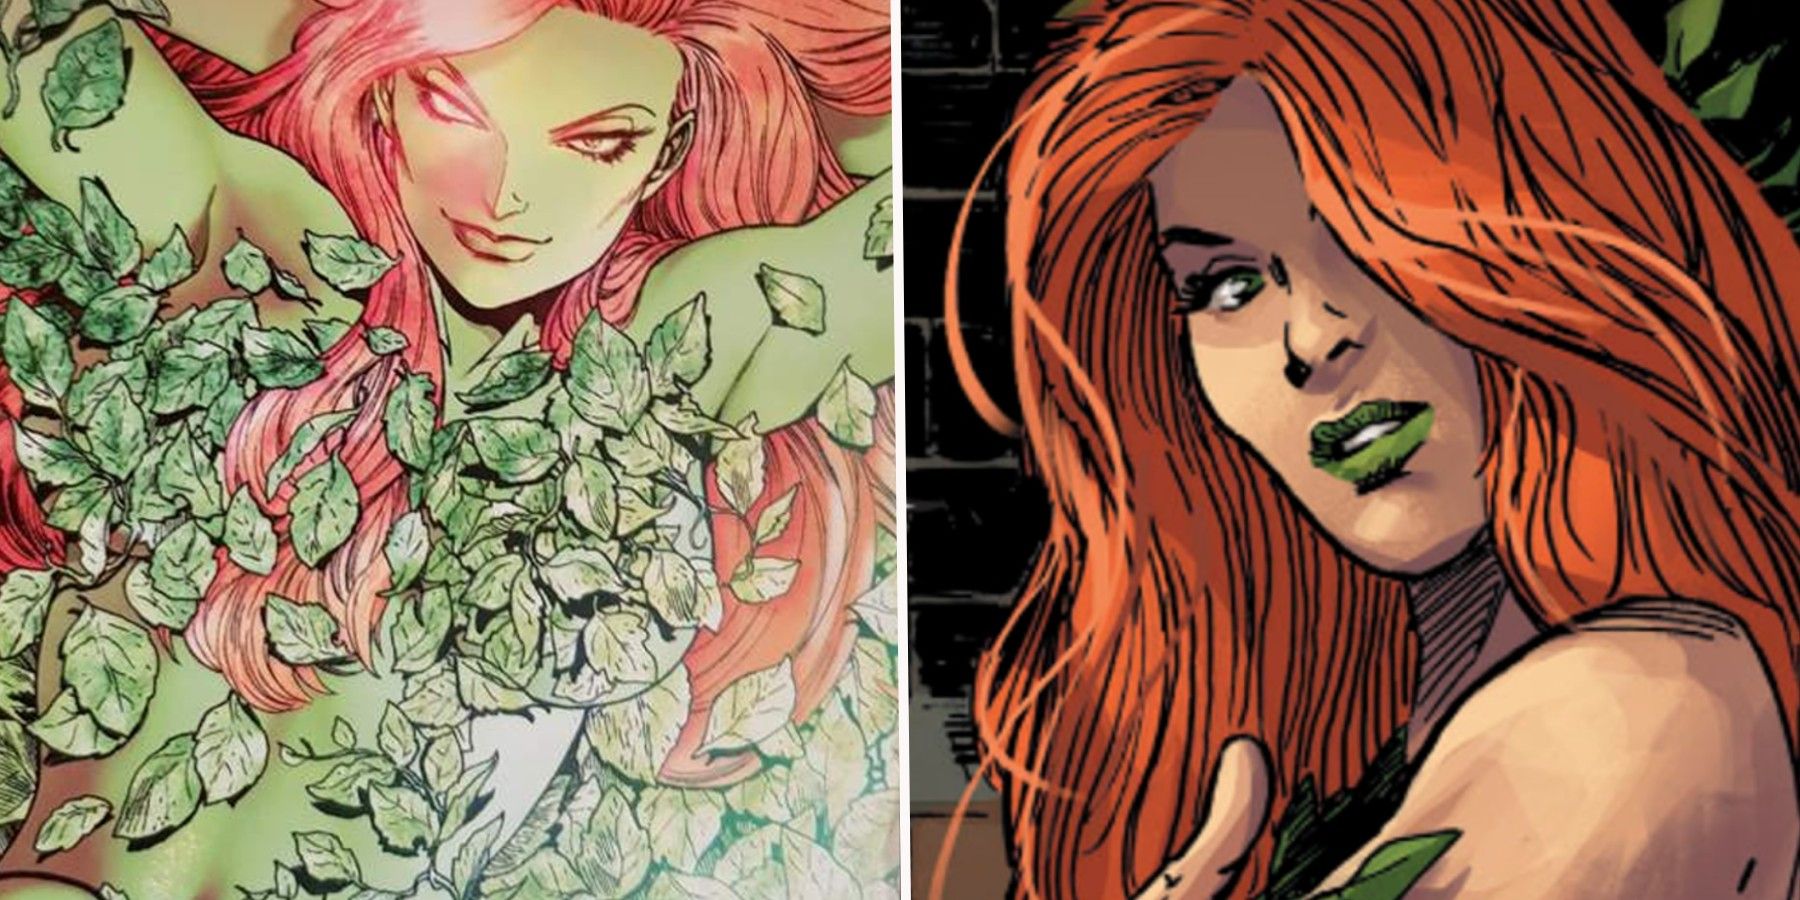 Poison Ivy DC Comics split image